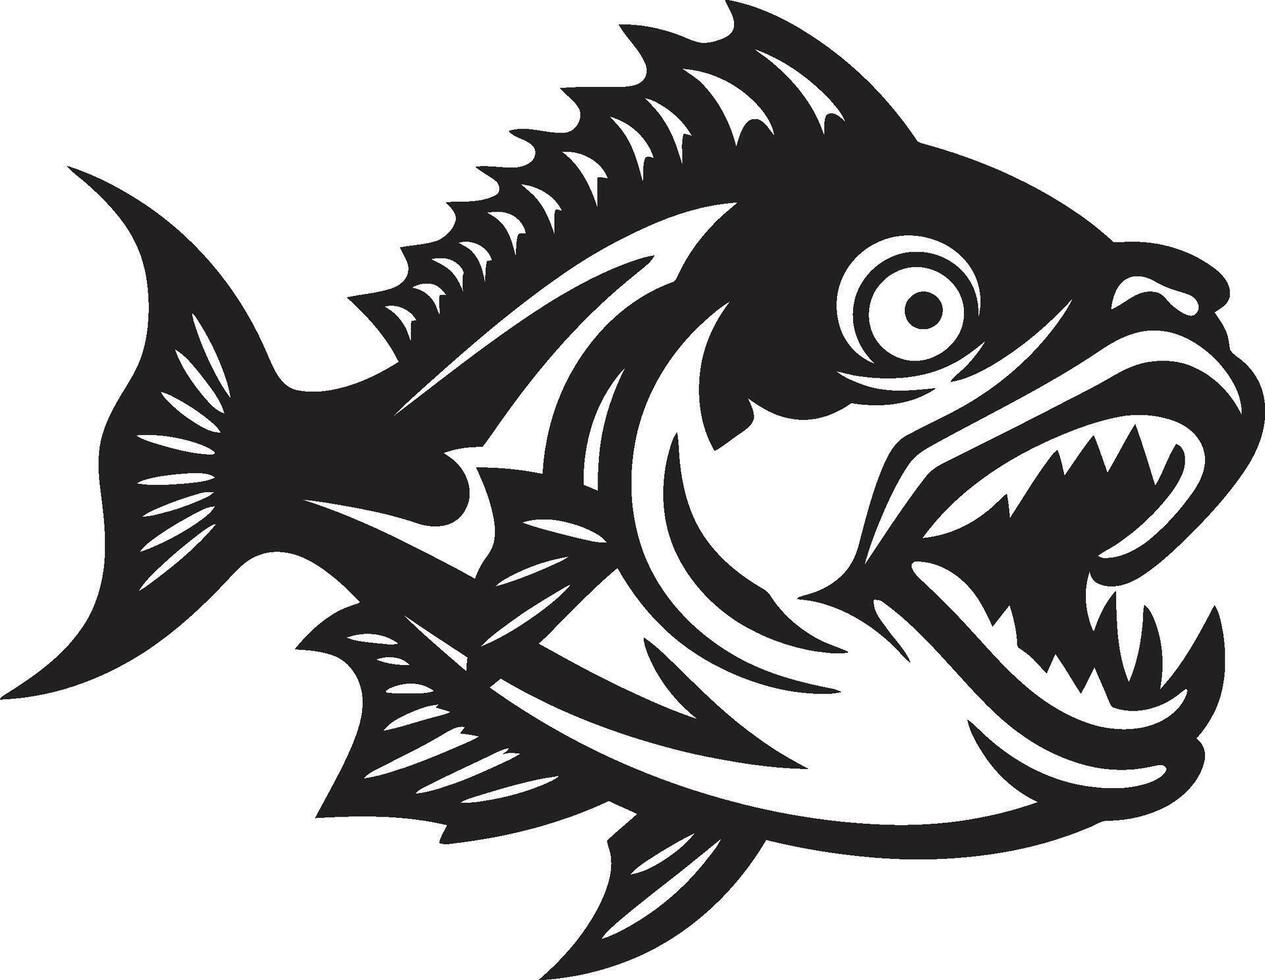 noir piranha assalto lustroso silhueta para uma negrito branding cheio de dentes terror emblema à moda Preto com elegante piranha vetor